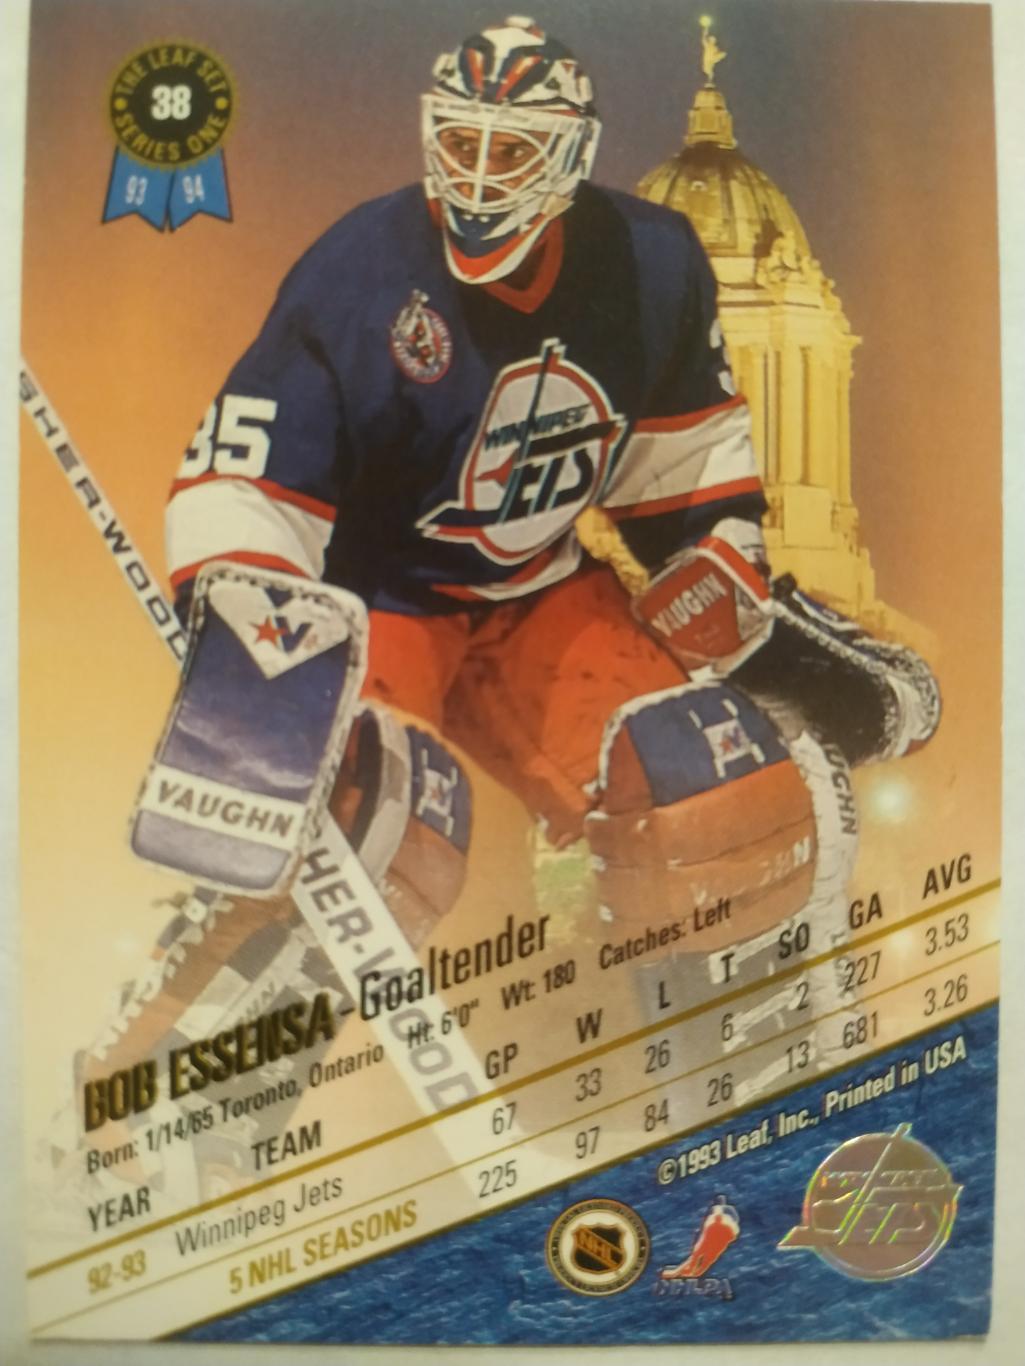 ХОККЕЙ КАРТОЧКА НХЛ LEAF SET SERIES ONE 1993-94 BOB ESSENSA WINNIPEG JETS #38 1